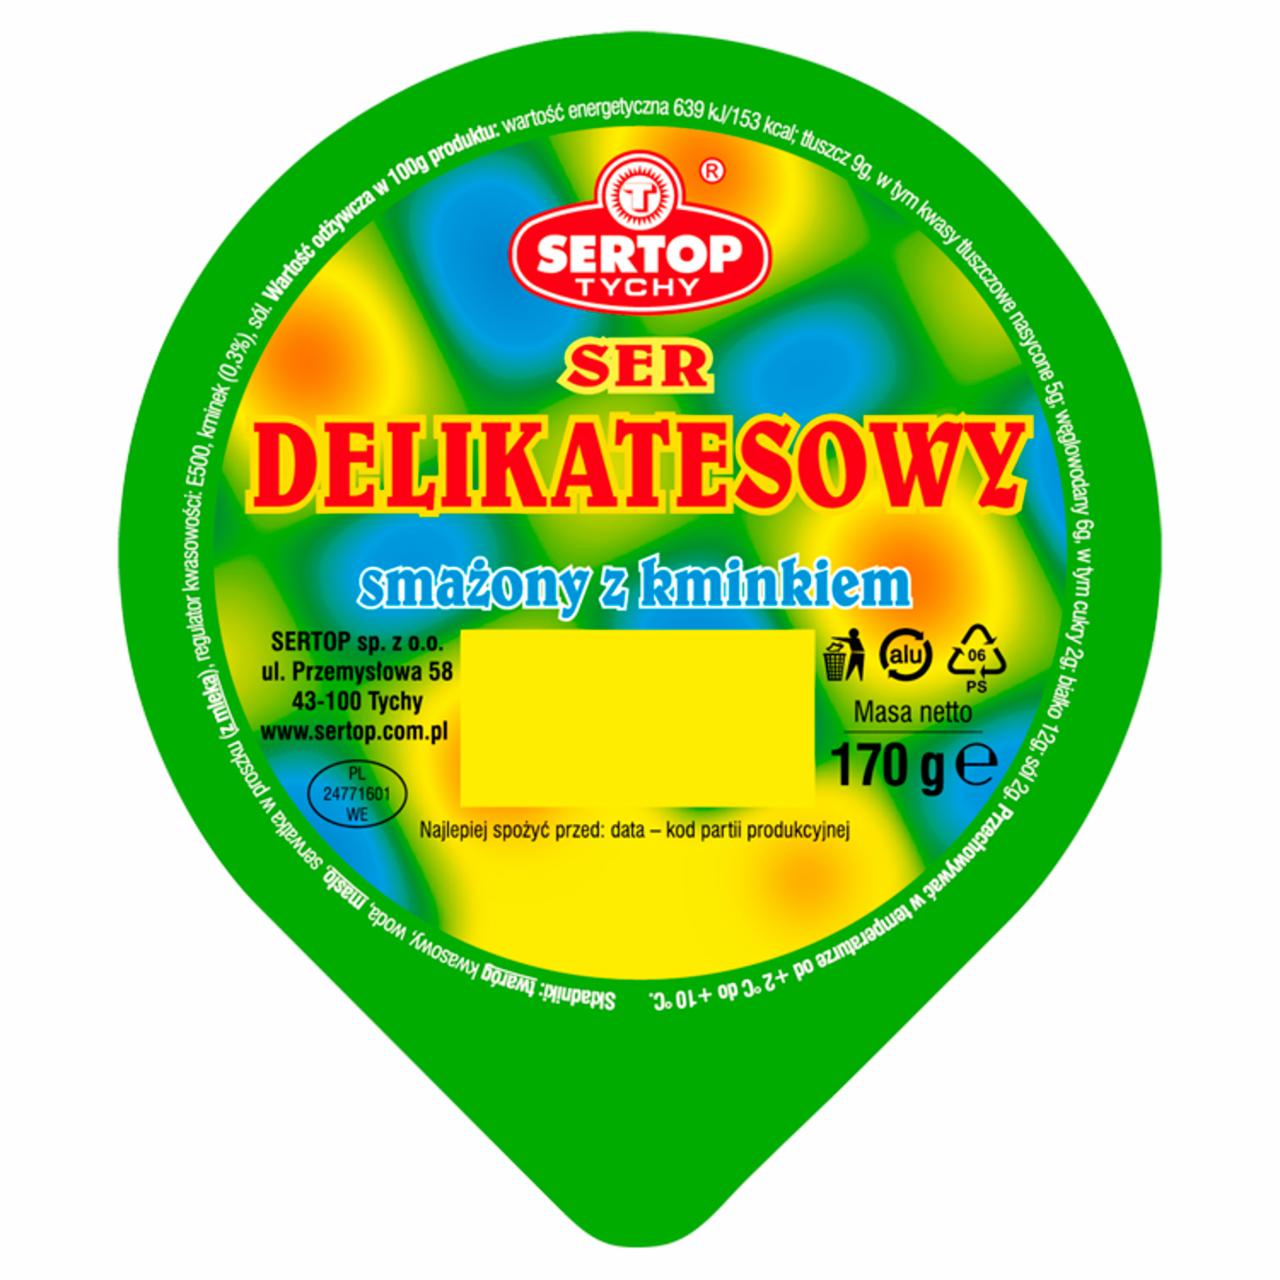 Zdjęcia - Sertop Tychy Ser delikatesowy smażony z kminkiem 170 g